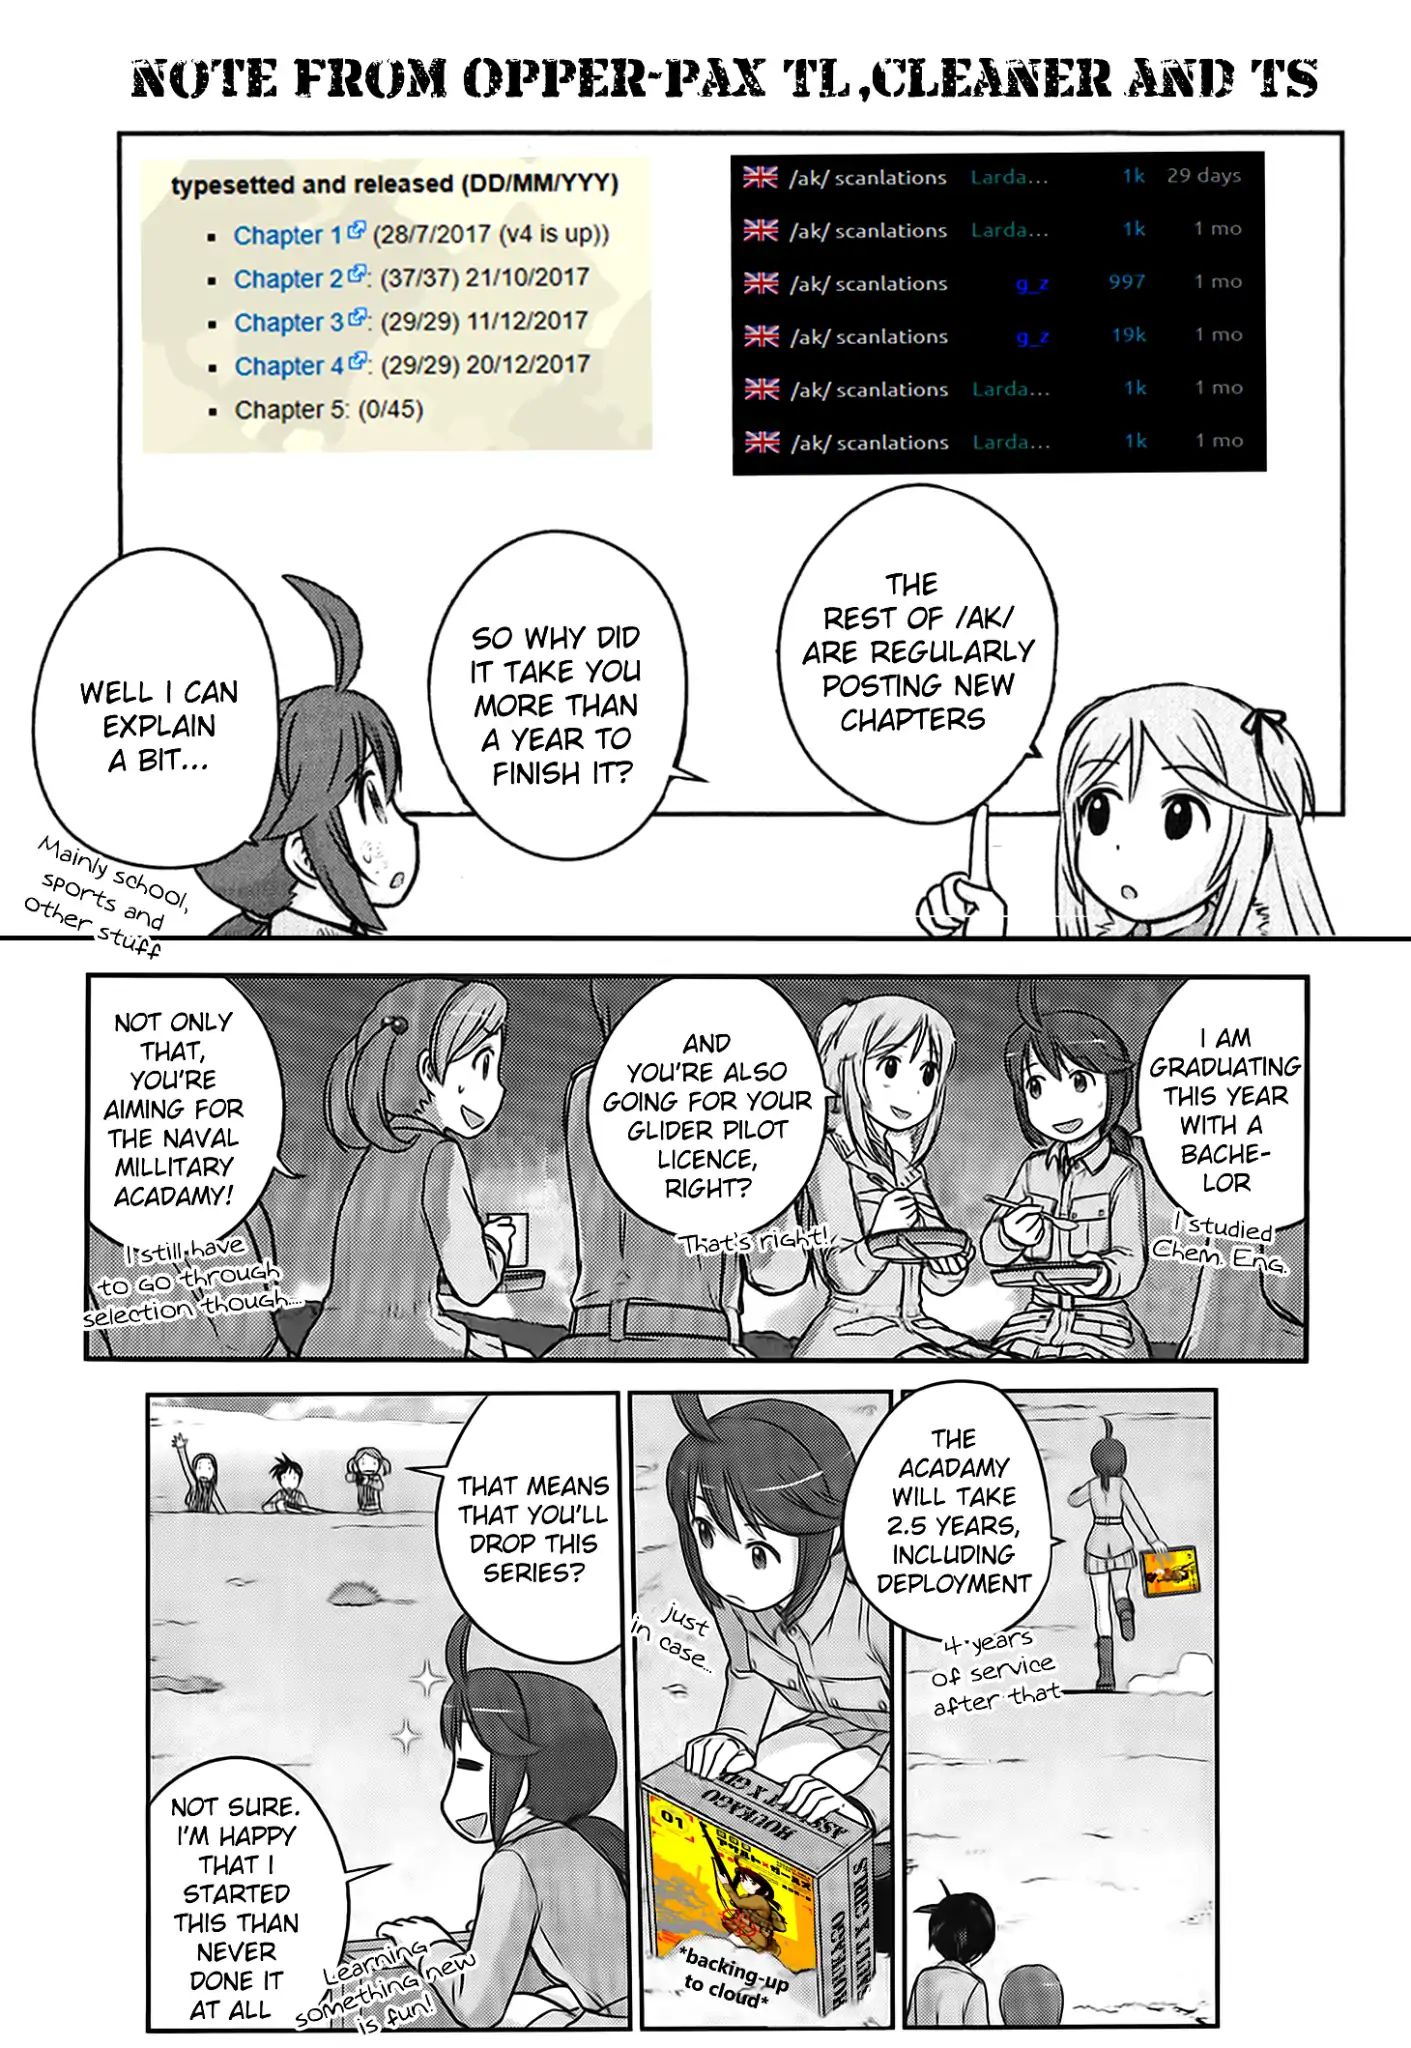 Houkago Assault Girls - Page 1